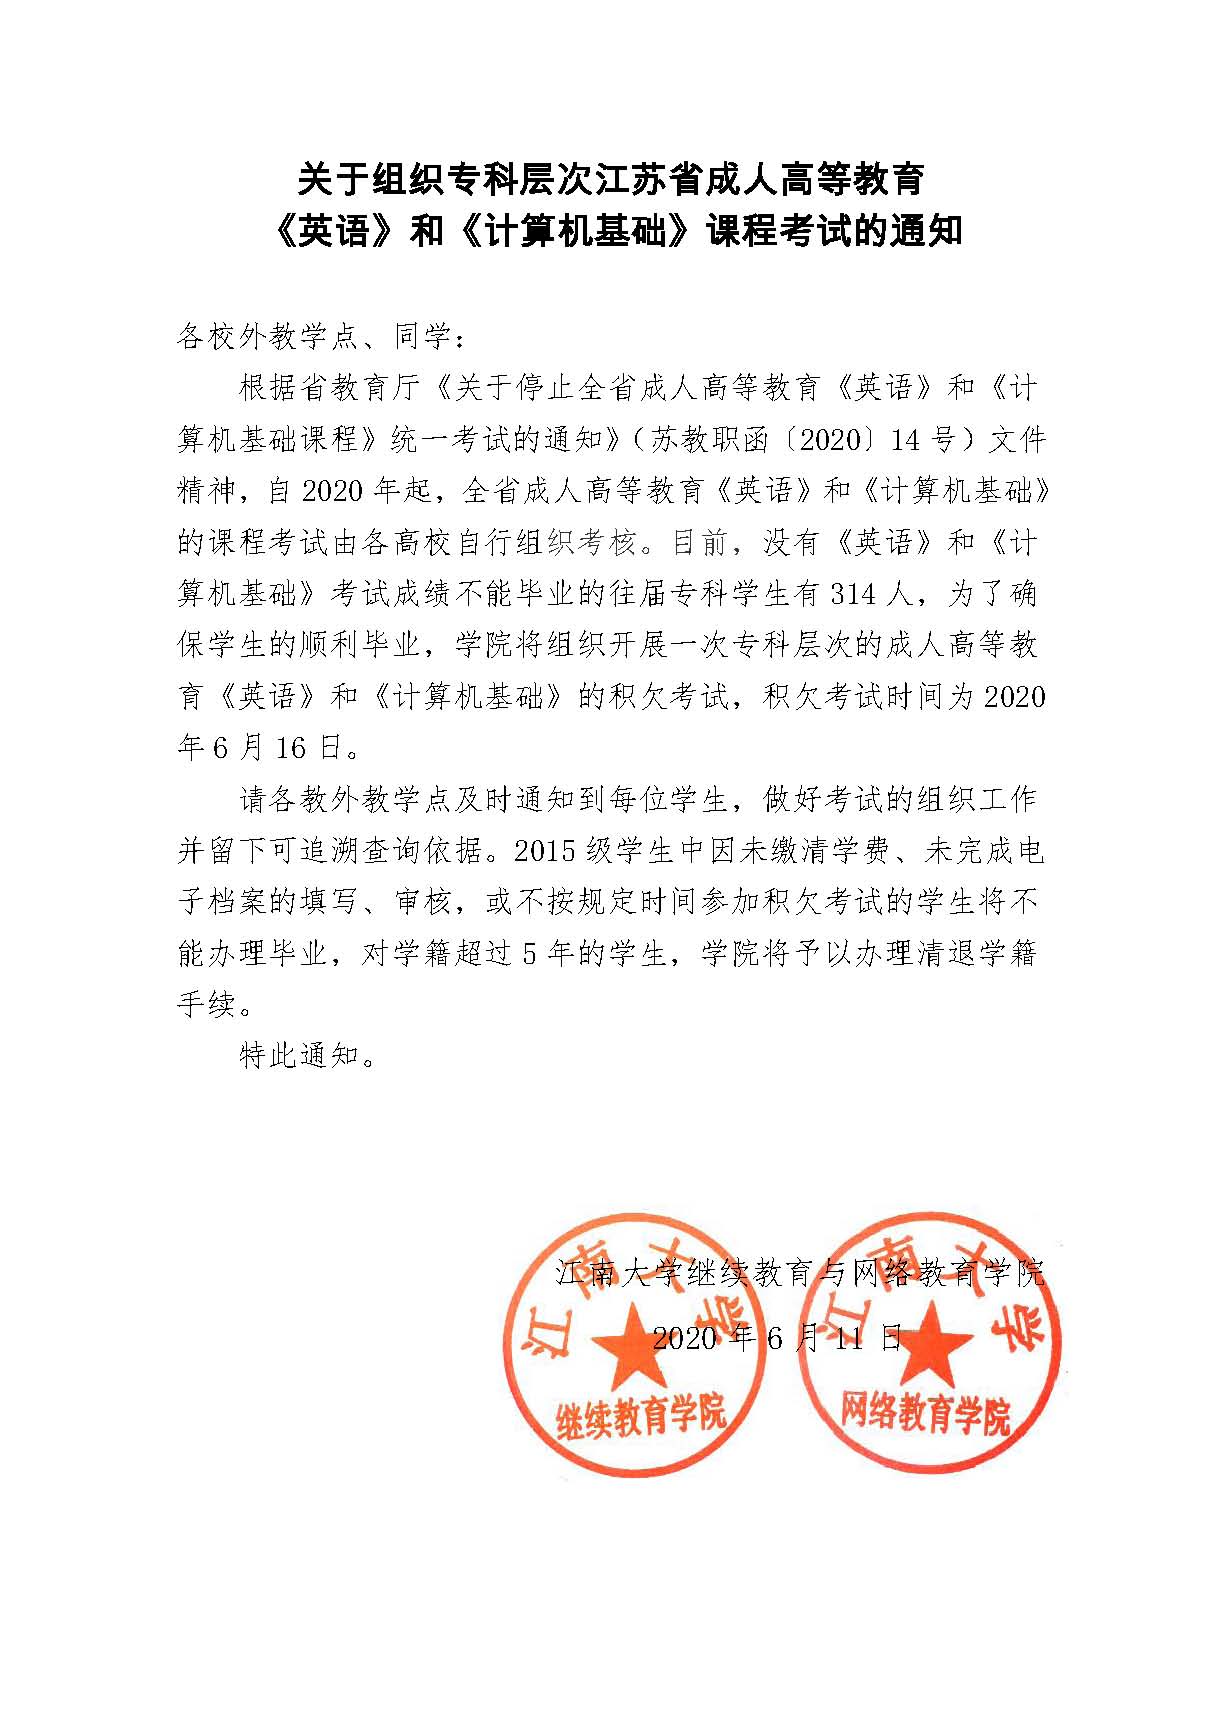 关于组织专科层次江苏省成人高等教育《英语》和《计算机基础》课程考试的通知  